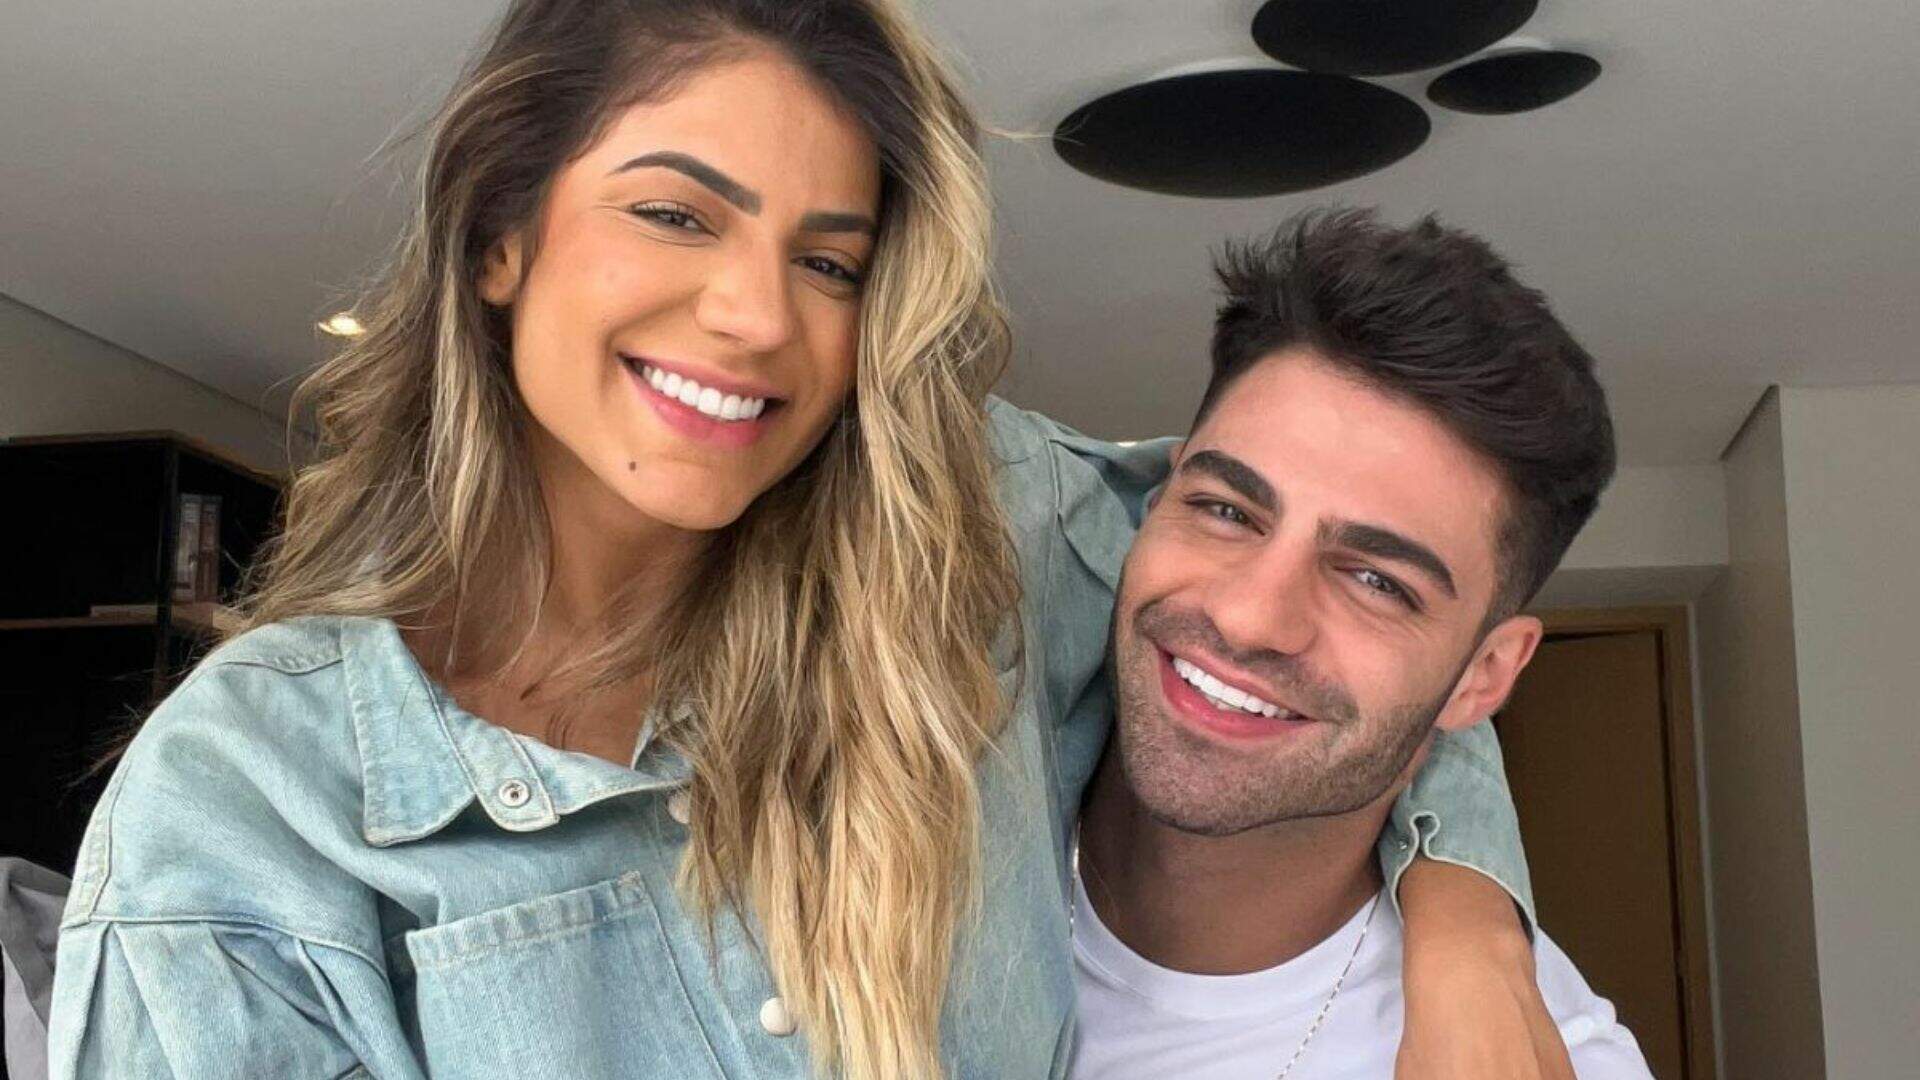 Dia dos Namorados: Hariany Almeida e DJ Netto reatam o relacionamento: “Tô lascada” - Metropolitana FM